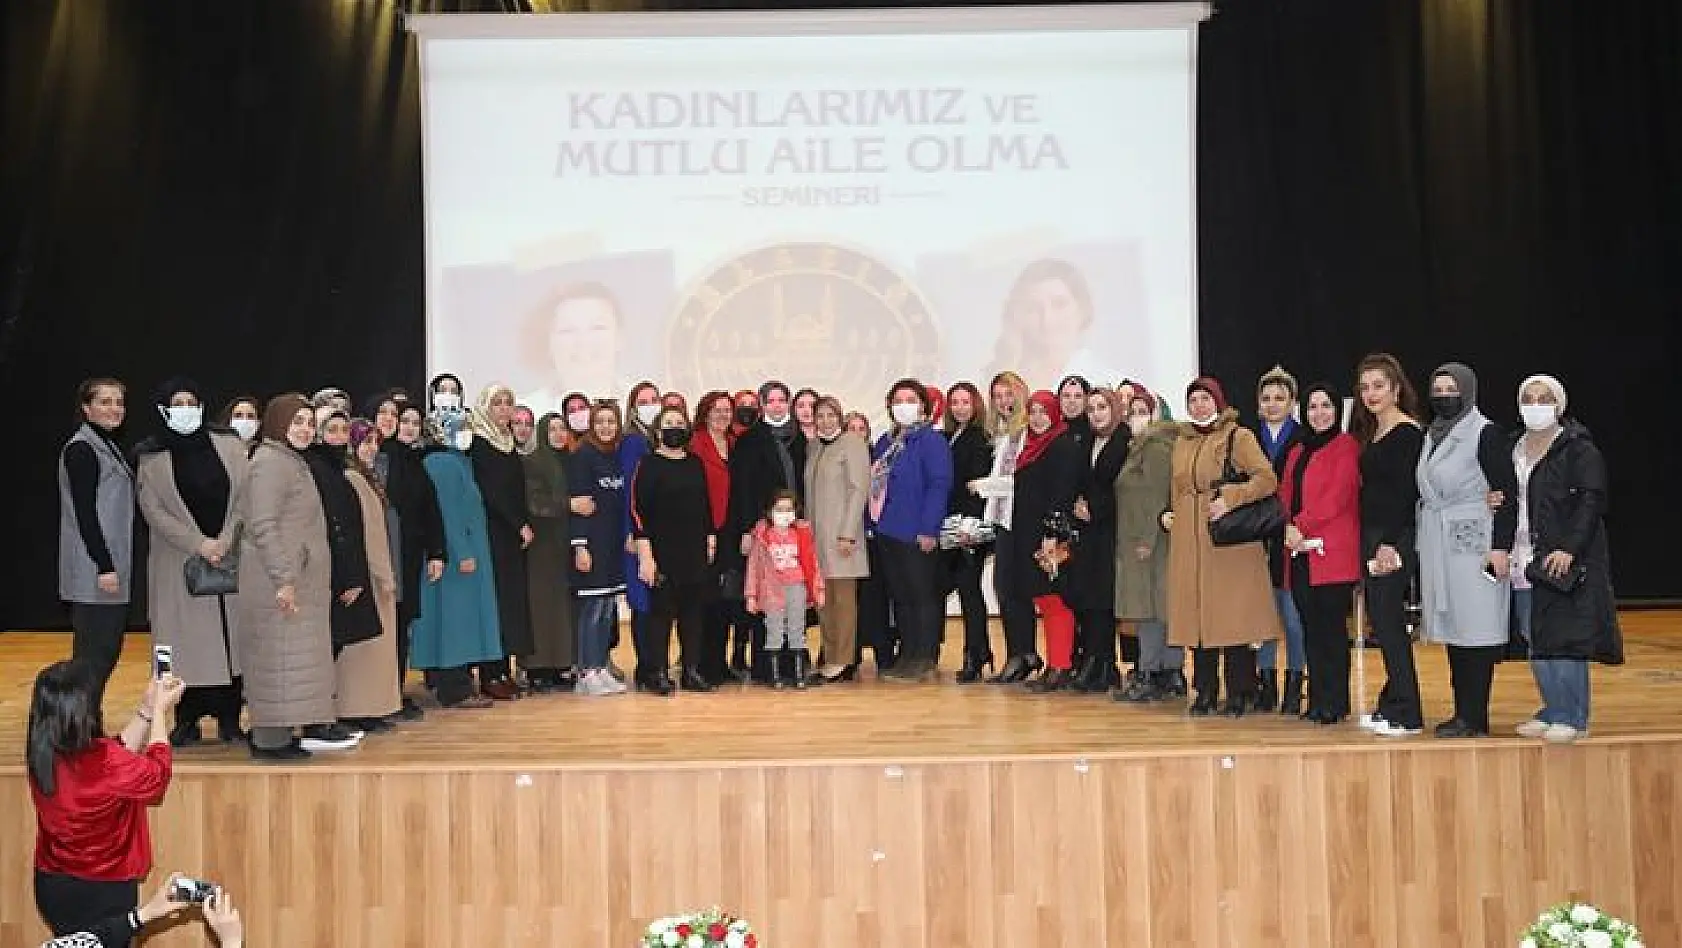 Elazığ Belediyesi Tarafından 'Kadınlarımız Ve Mutlu Aile Olma'Semineri Tamamlandı